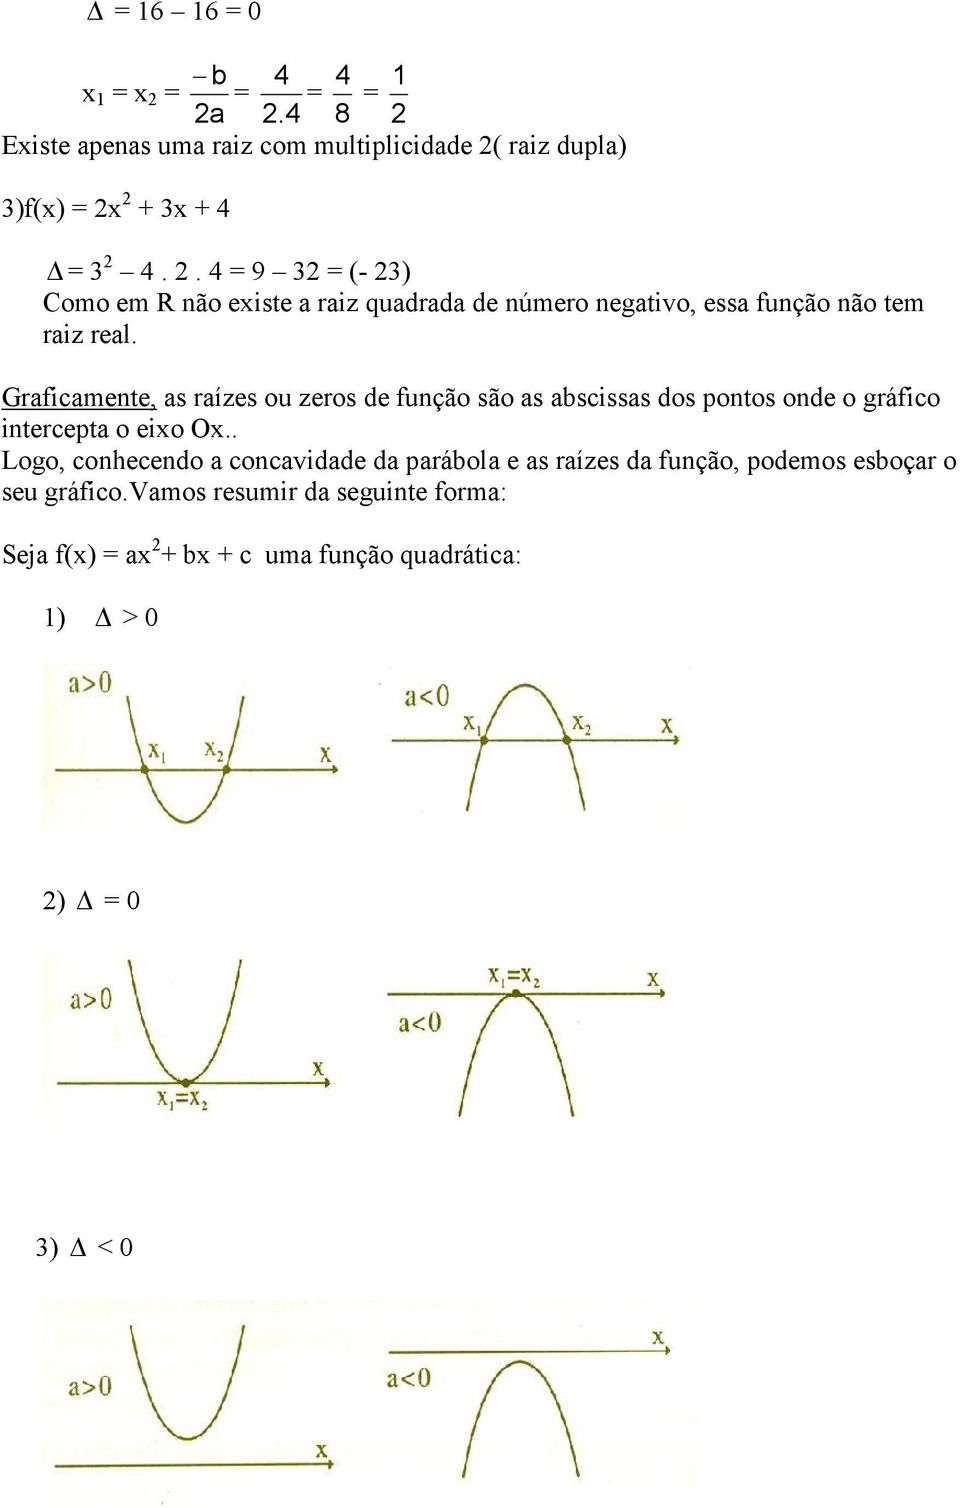 Graficamente, as raízes ou zeros de função são as abscissas dos pontos onde o gráfico intercepta o eixo Ox.